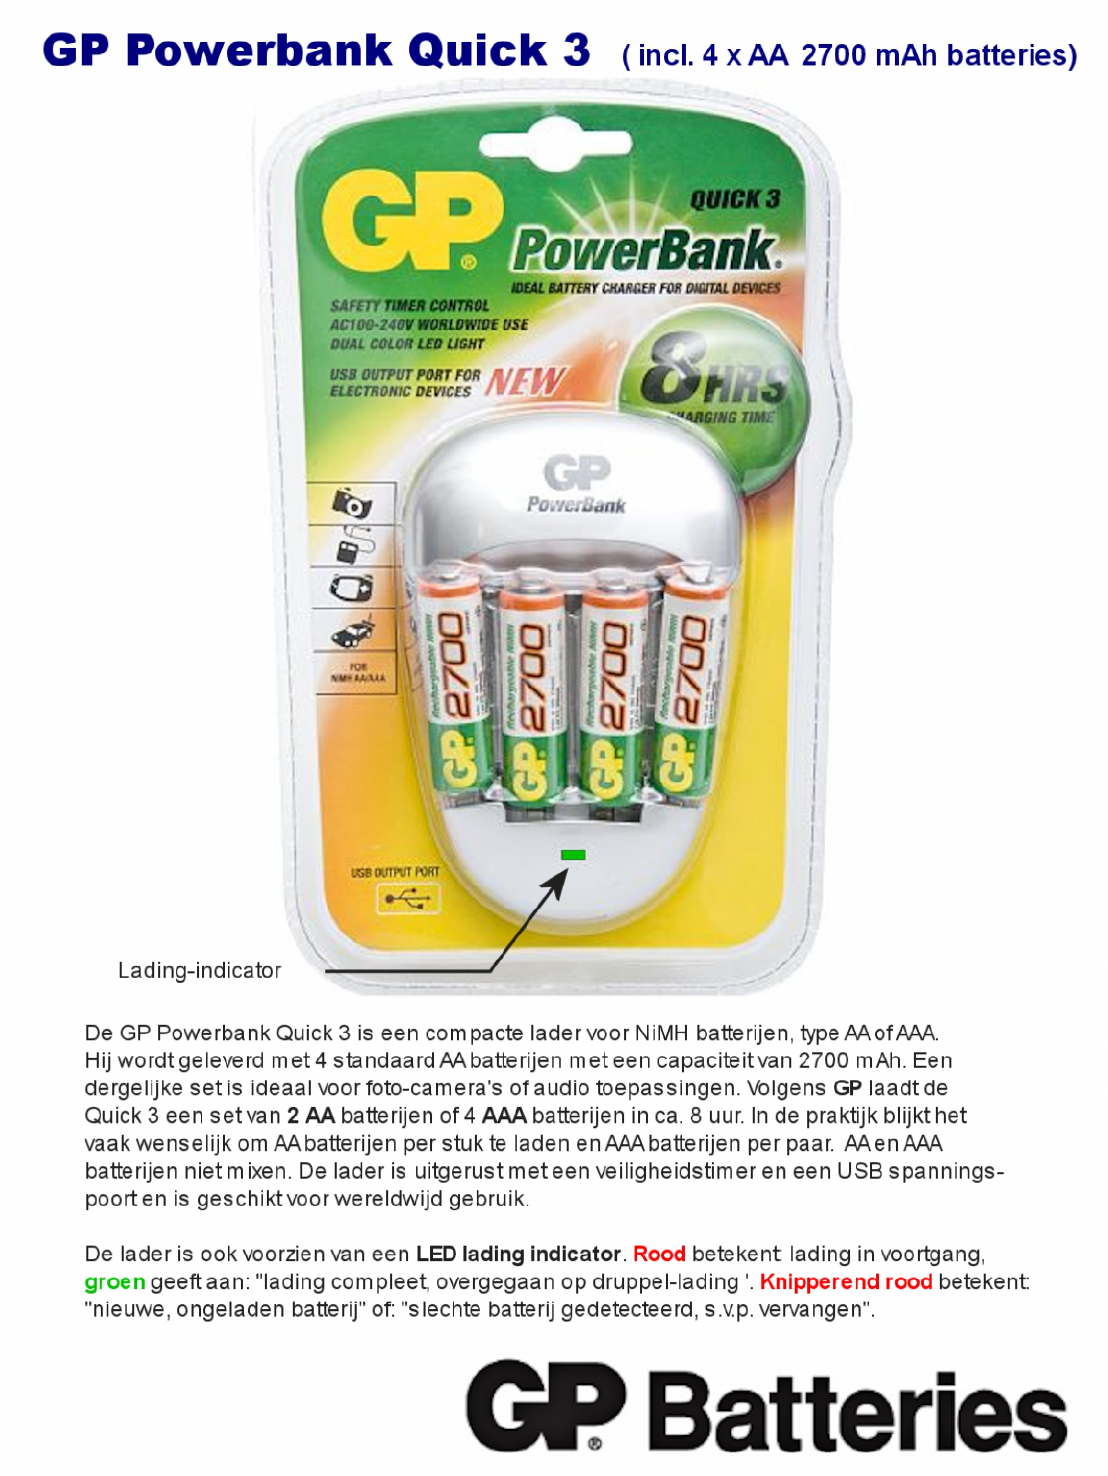 Maak een naam verwennen droogte Handleiding Gp batteries Powerbank Quick 3 (pagina 1 van 1) (Nederlands)